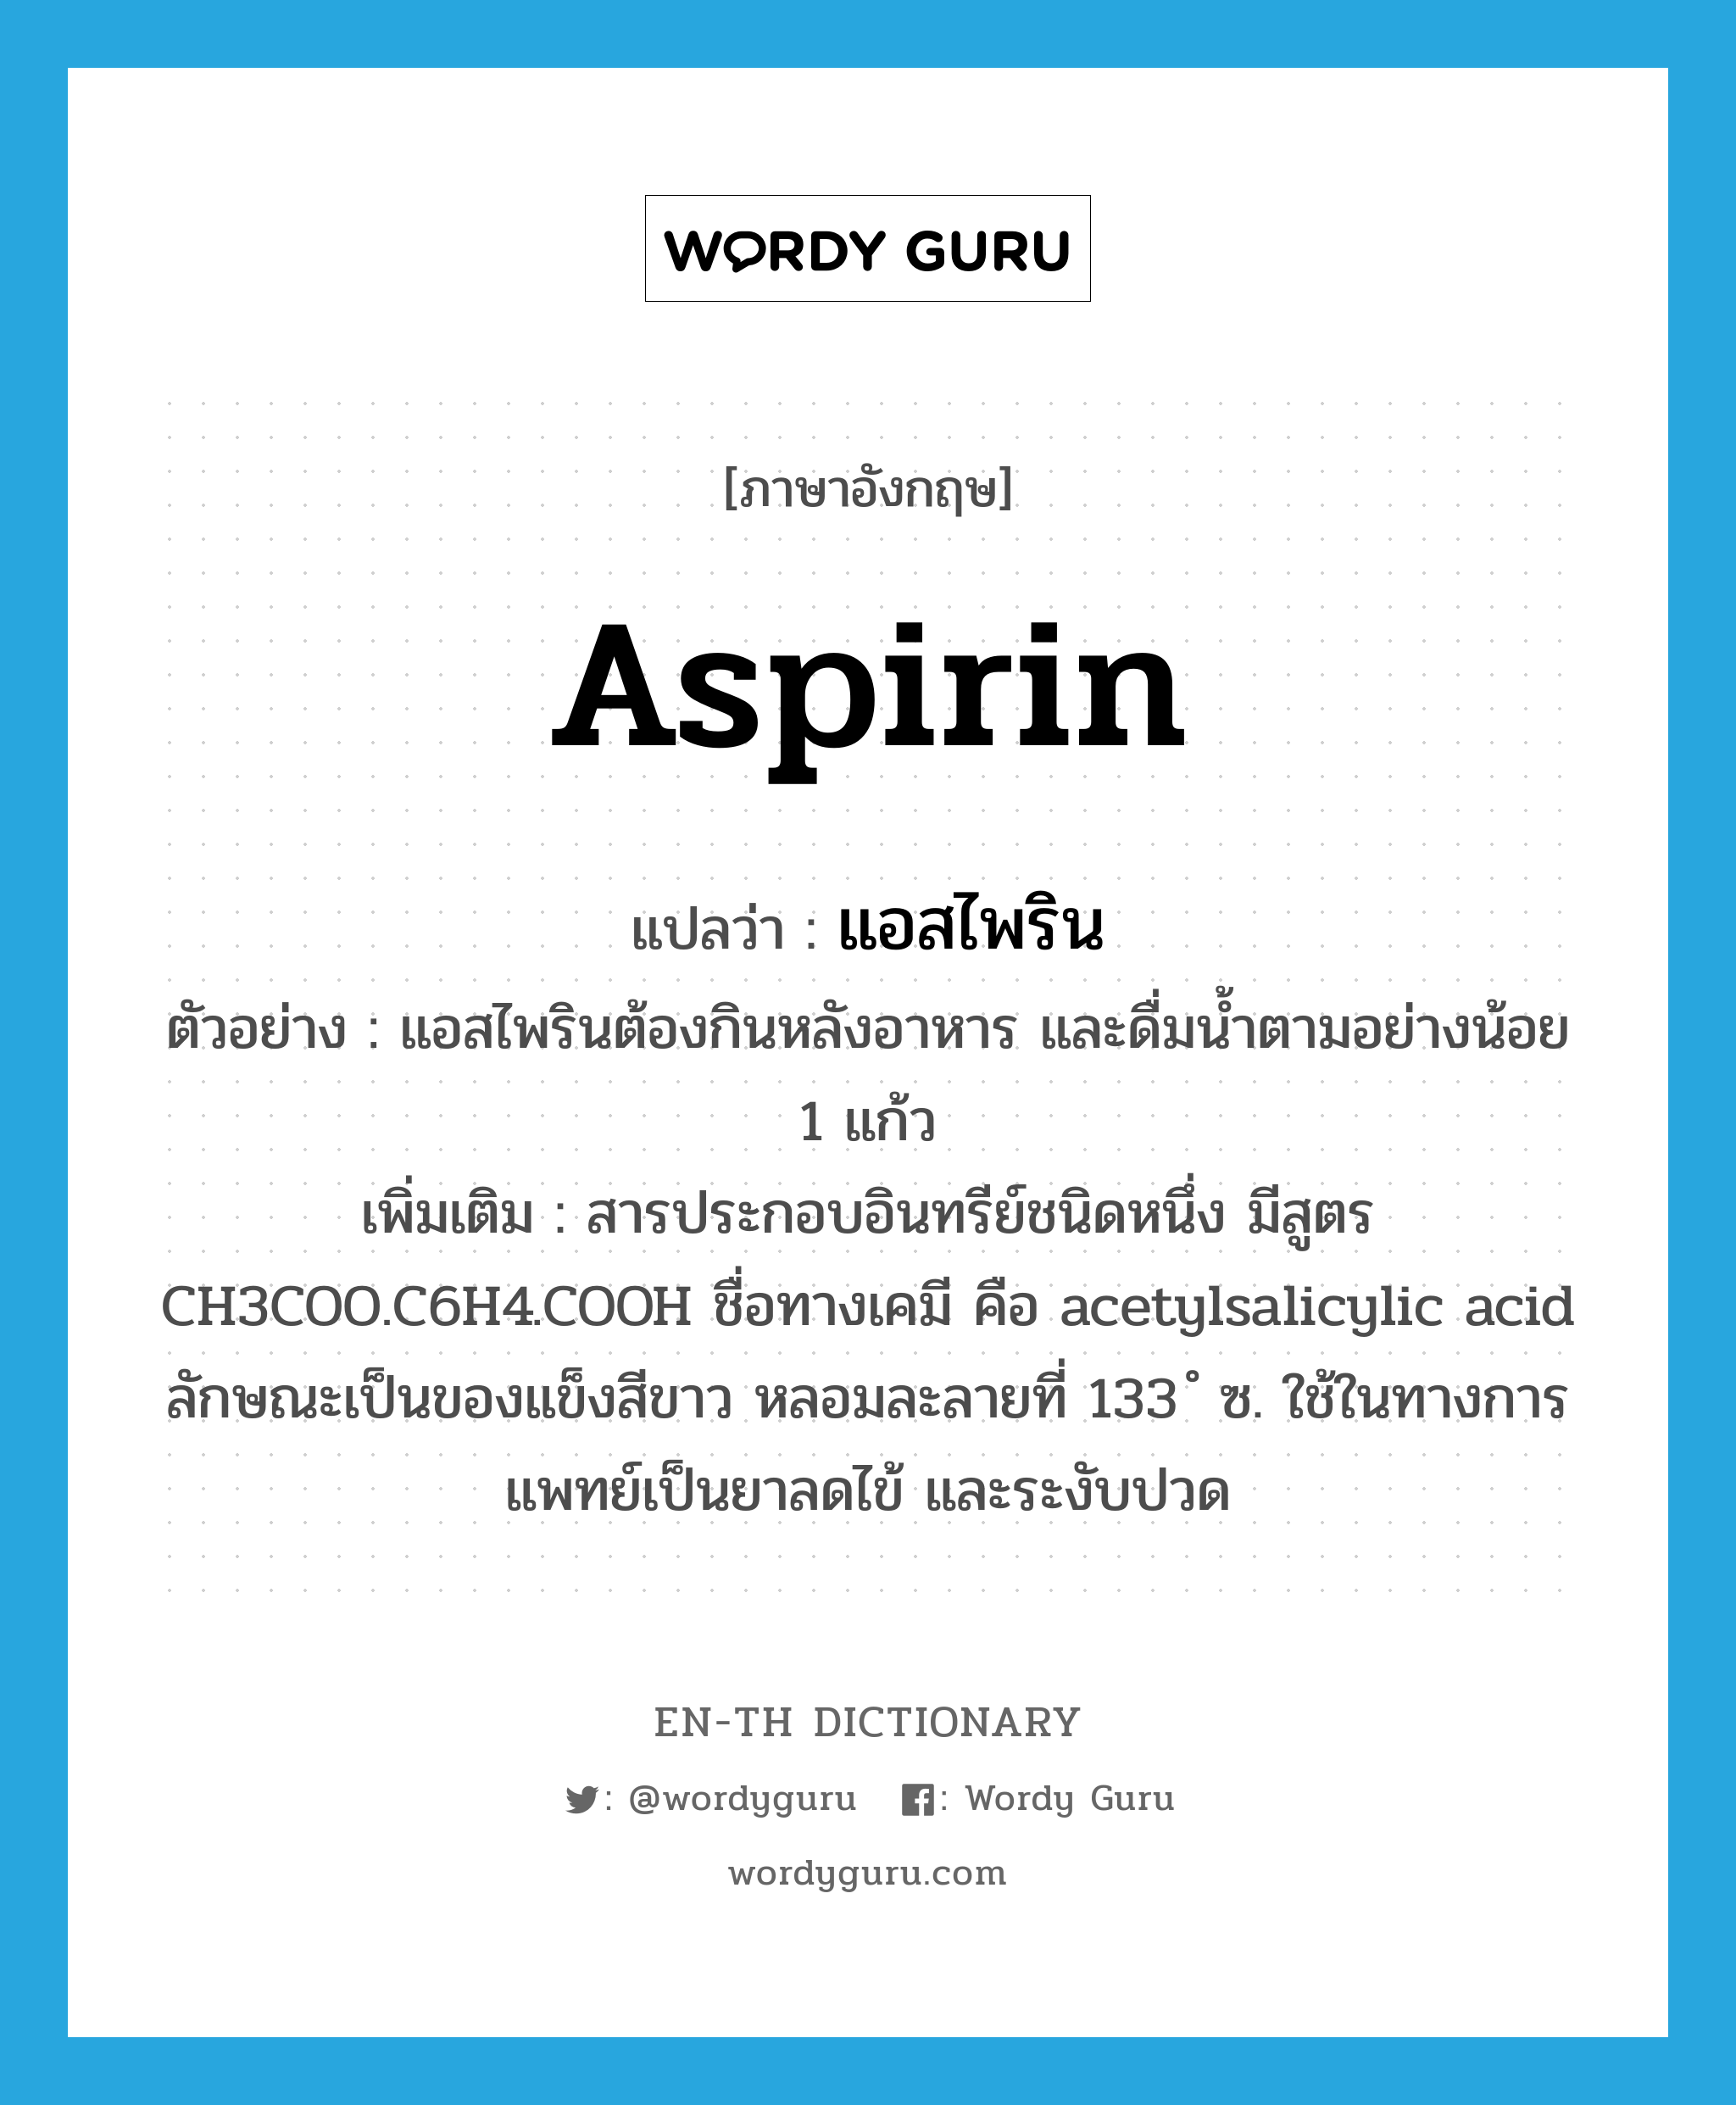 แอสไพริน ภาษาอังกฤษ?, คำศัพท์ภาษาอังกฤษ แอสไพริน แปลว่า aspirin ประเภท N ตัวอย่าง แอสไพรินต้องกินหลังอาหาร และดื่มน้ำตามอย่างน้อย 1 แก้ว เพิ่มเติม สารประกอบอินทรีย์ชนิดหนึ่ง มีสูตร CH3COO.C6H4.COOH ชื่อทางเคมี คือ acetylsalicylic acid ลักษณะเป็นของแข็งสีขาว หลอมละลายที่ 133 ํ ซ. ใช้ในทางการแพทย์เป็นยาลดไข้ และระงับปวด หมวด N